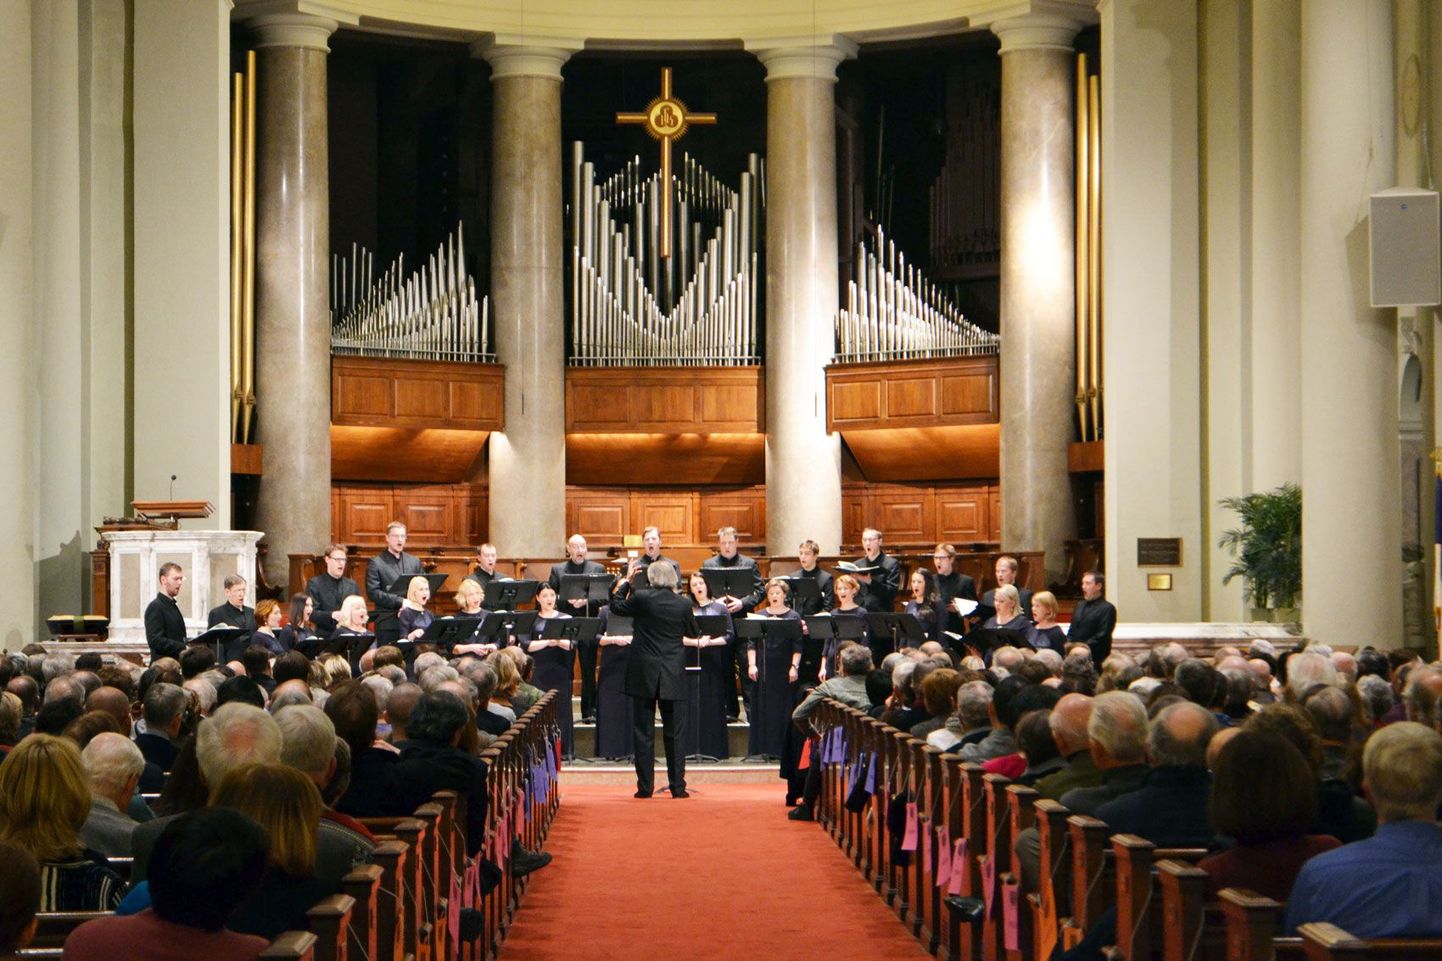 Tõnu Kaljuste ja Eesti Filharmoonia Kammerkoori kontsert National City kirikus ei jäänud palju maha eelmise kevade suurejoonelisest Kennedy keskuse kontserdist.